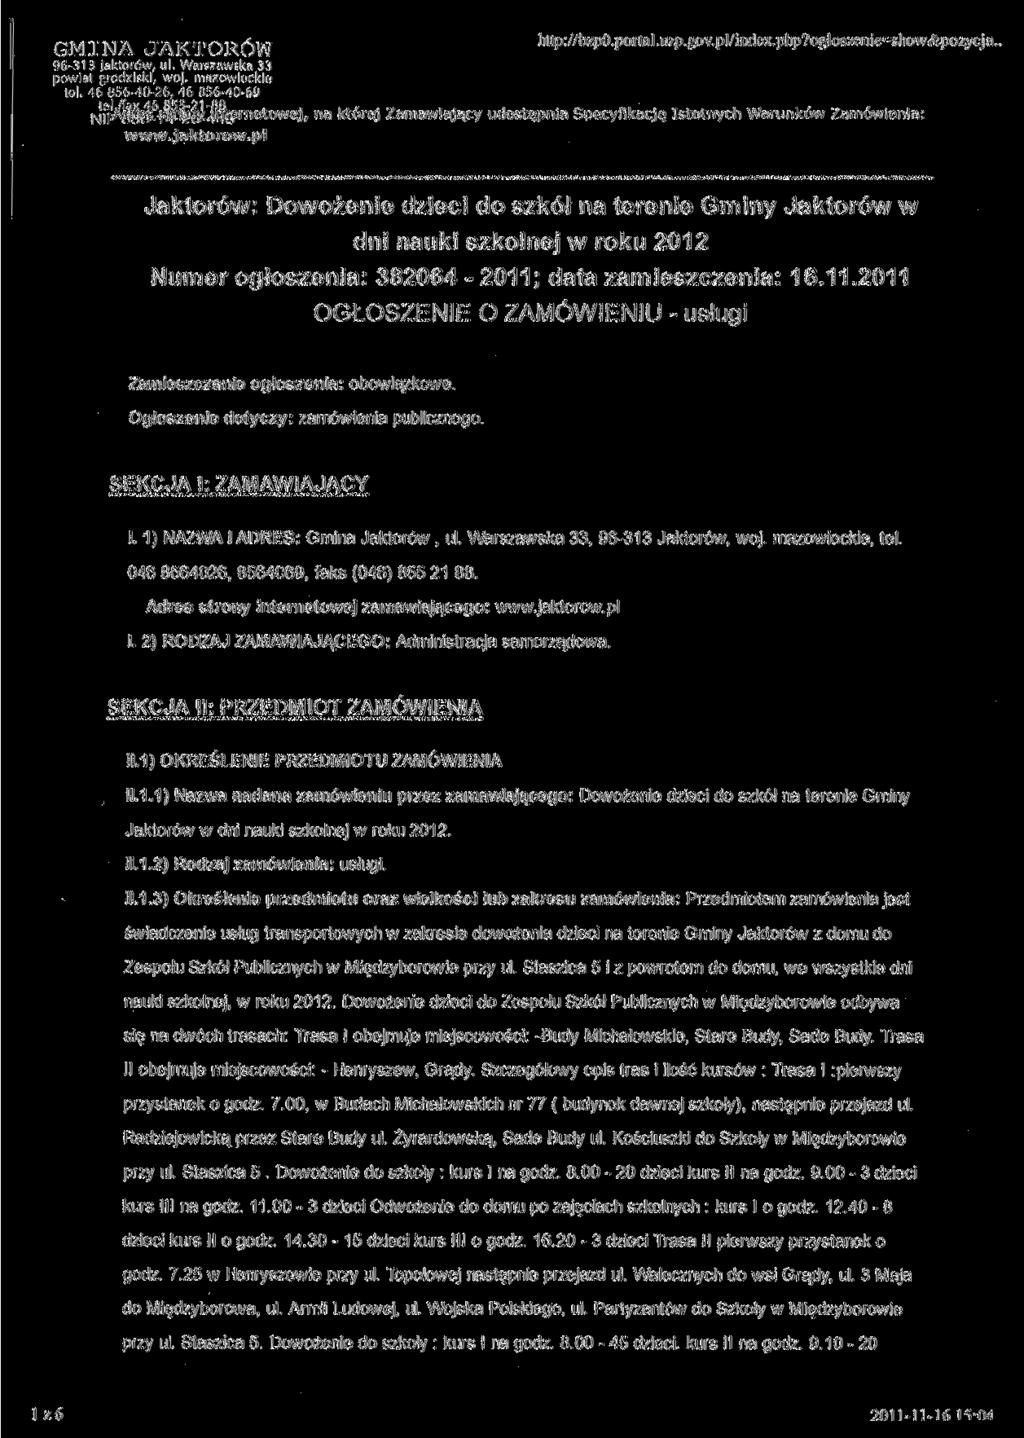 GMINA JAKTORÓW 96-313 Jaktorów, ul. Warszawska 33 powiat grodziski, woj. mazowieckie tel. 46 856-40-26, 46 856-40-60 http://bzp0.portal.uzp.gov.pl/index.php?ogloszenie=show&pozycja.